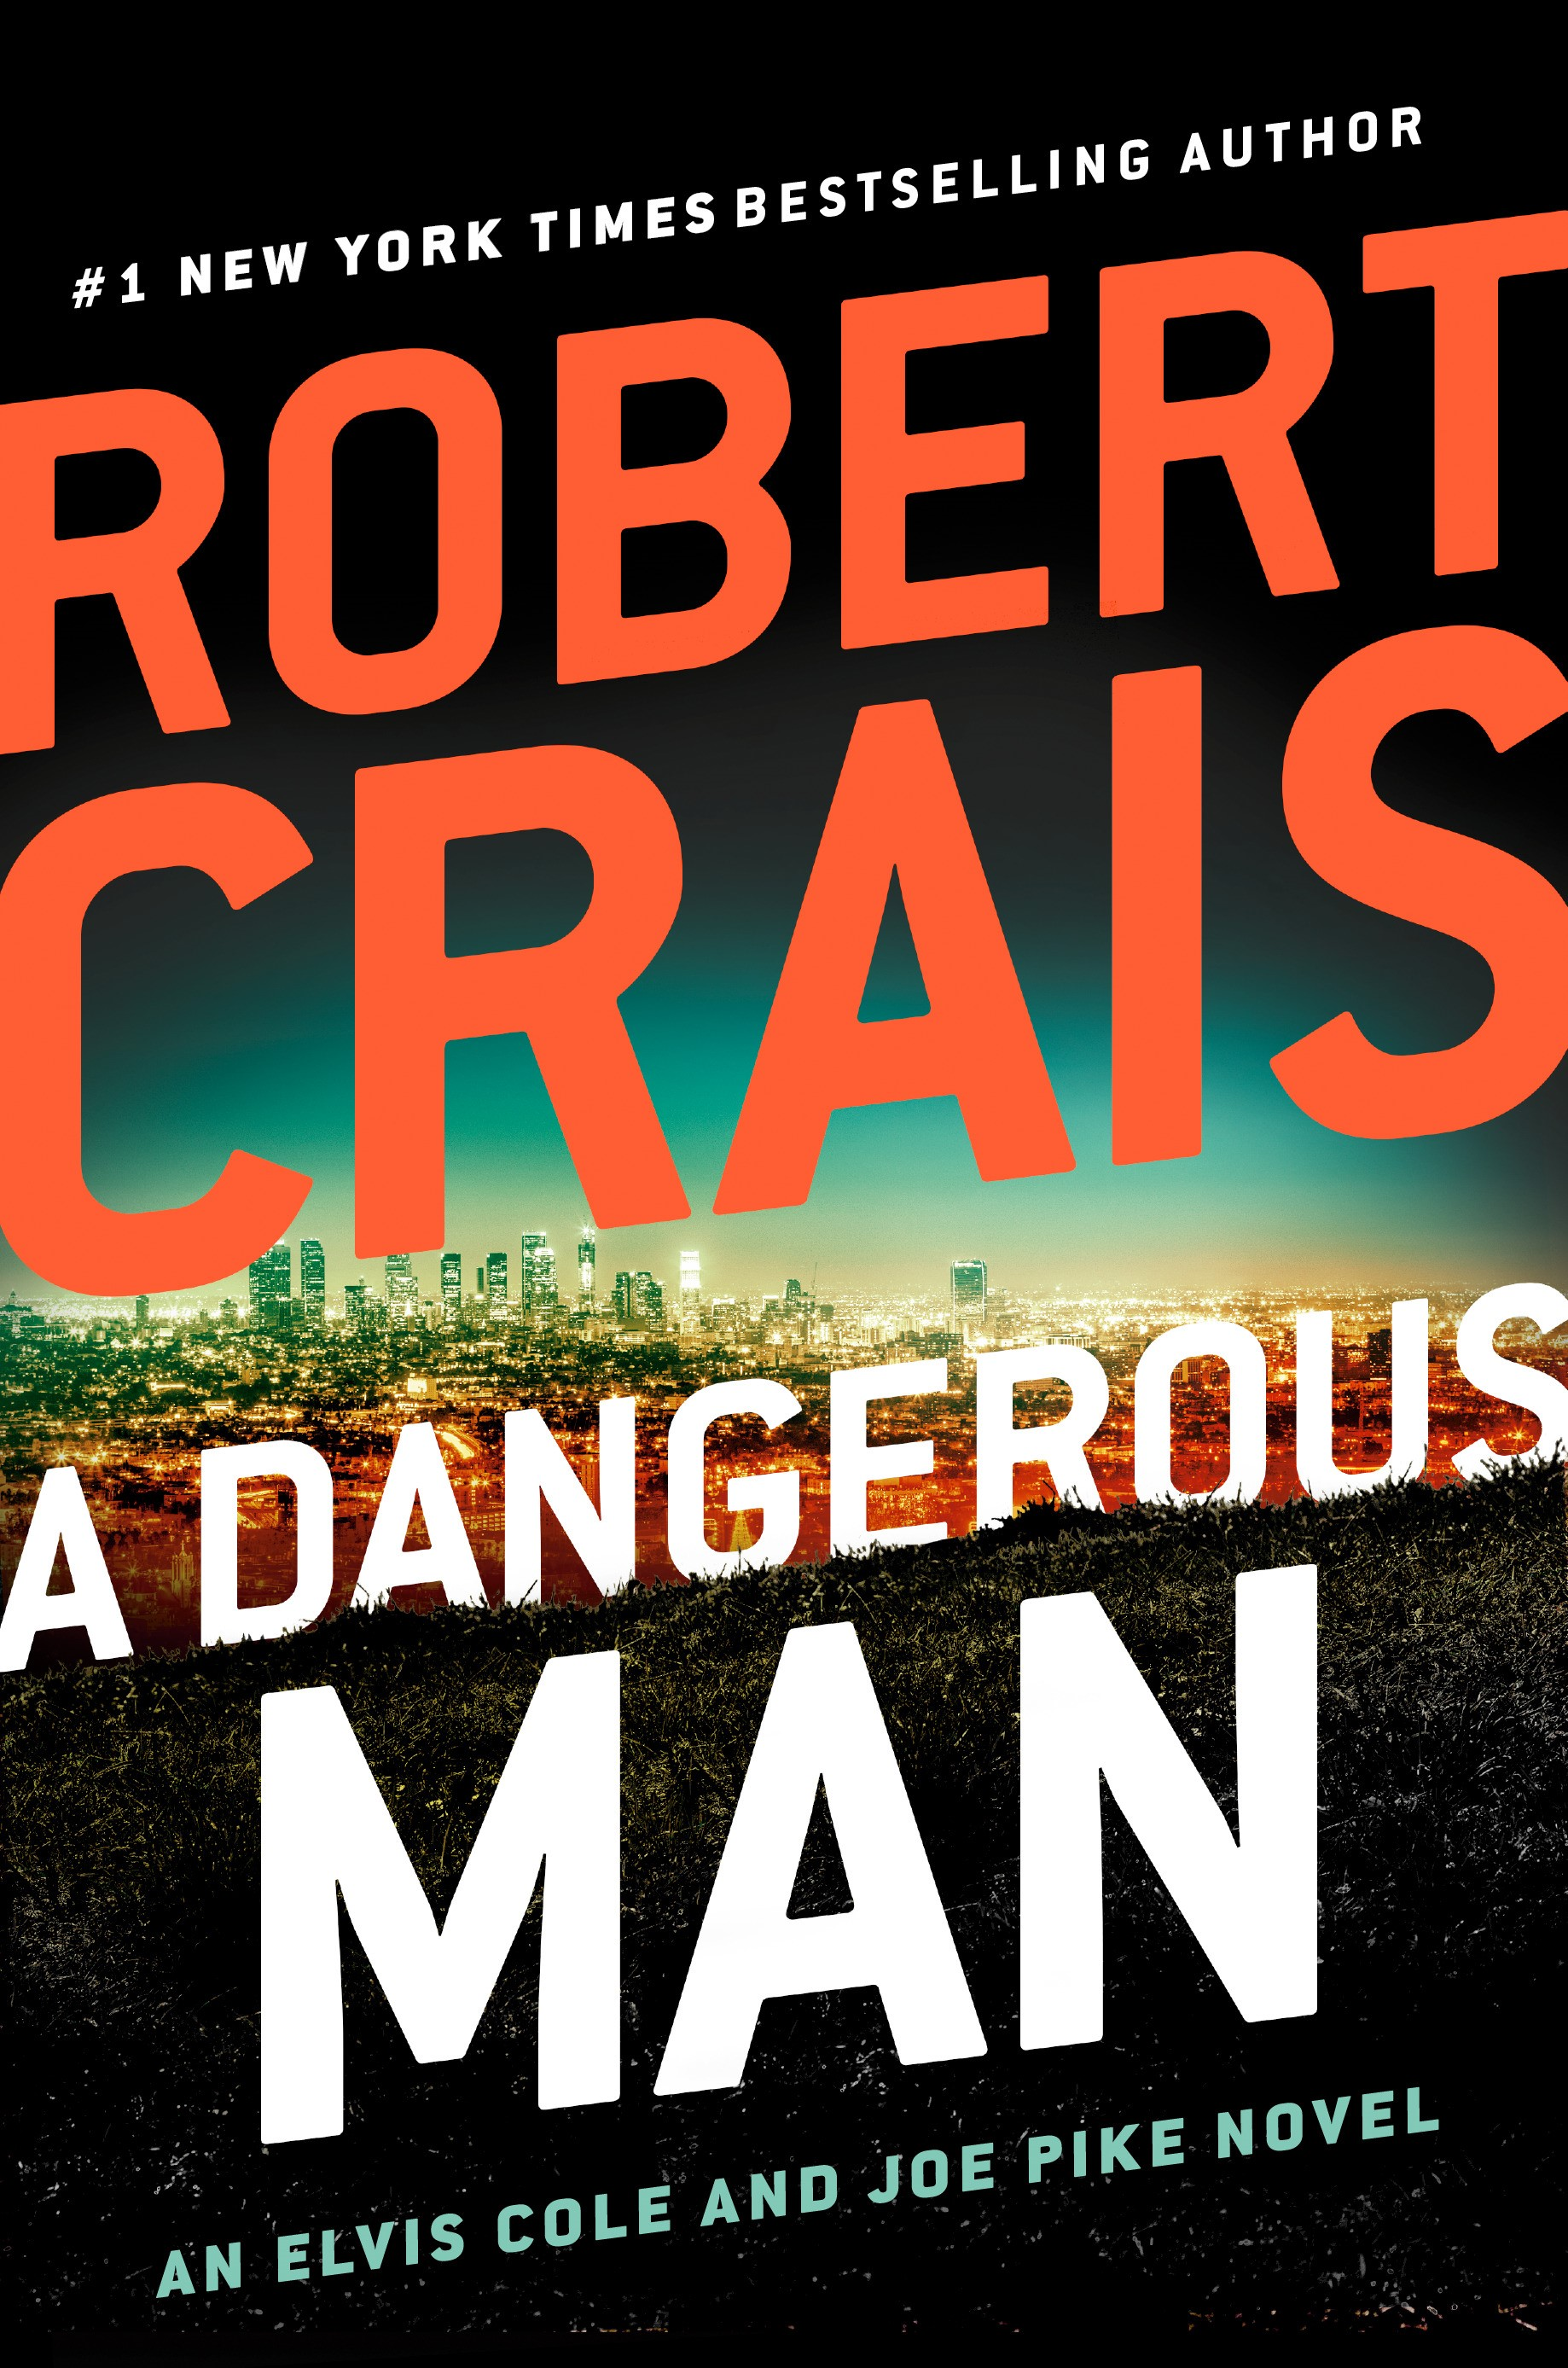 Hines reads Robert Crais' A Dangerous Man